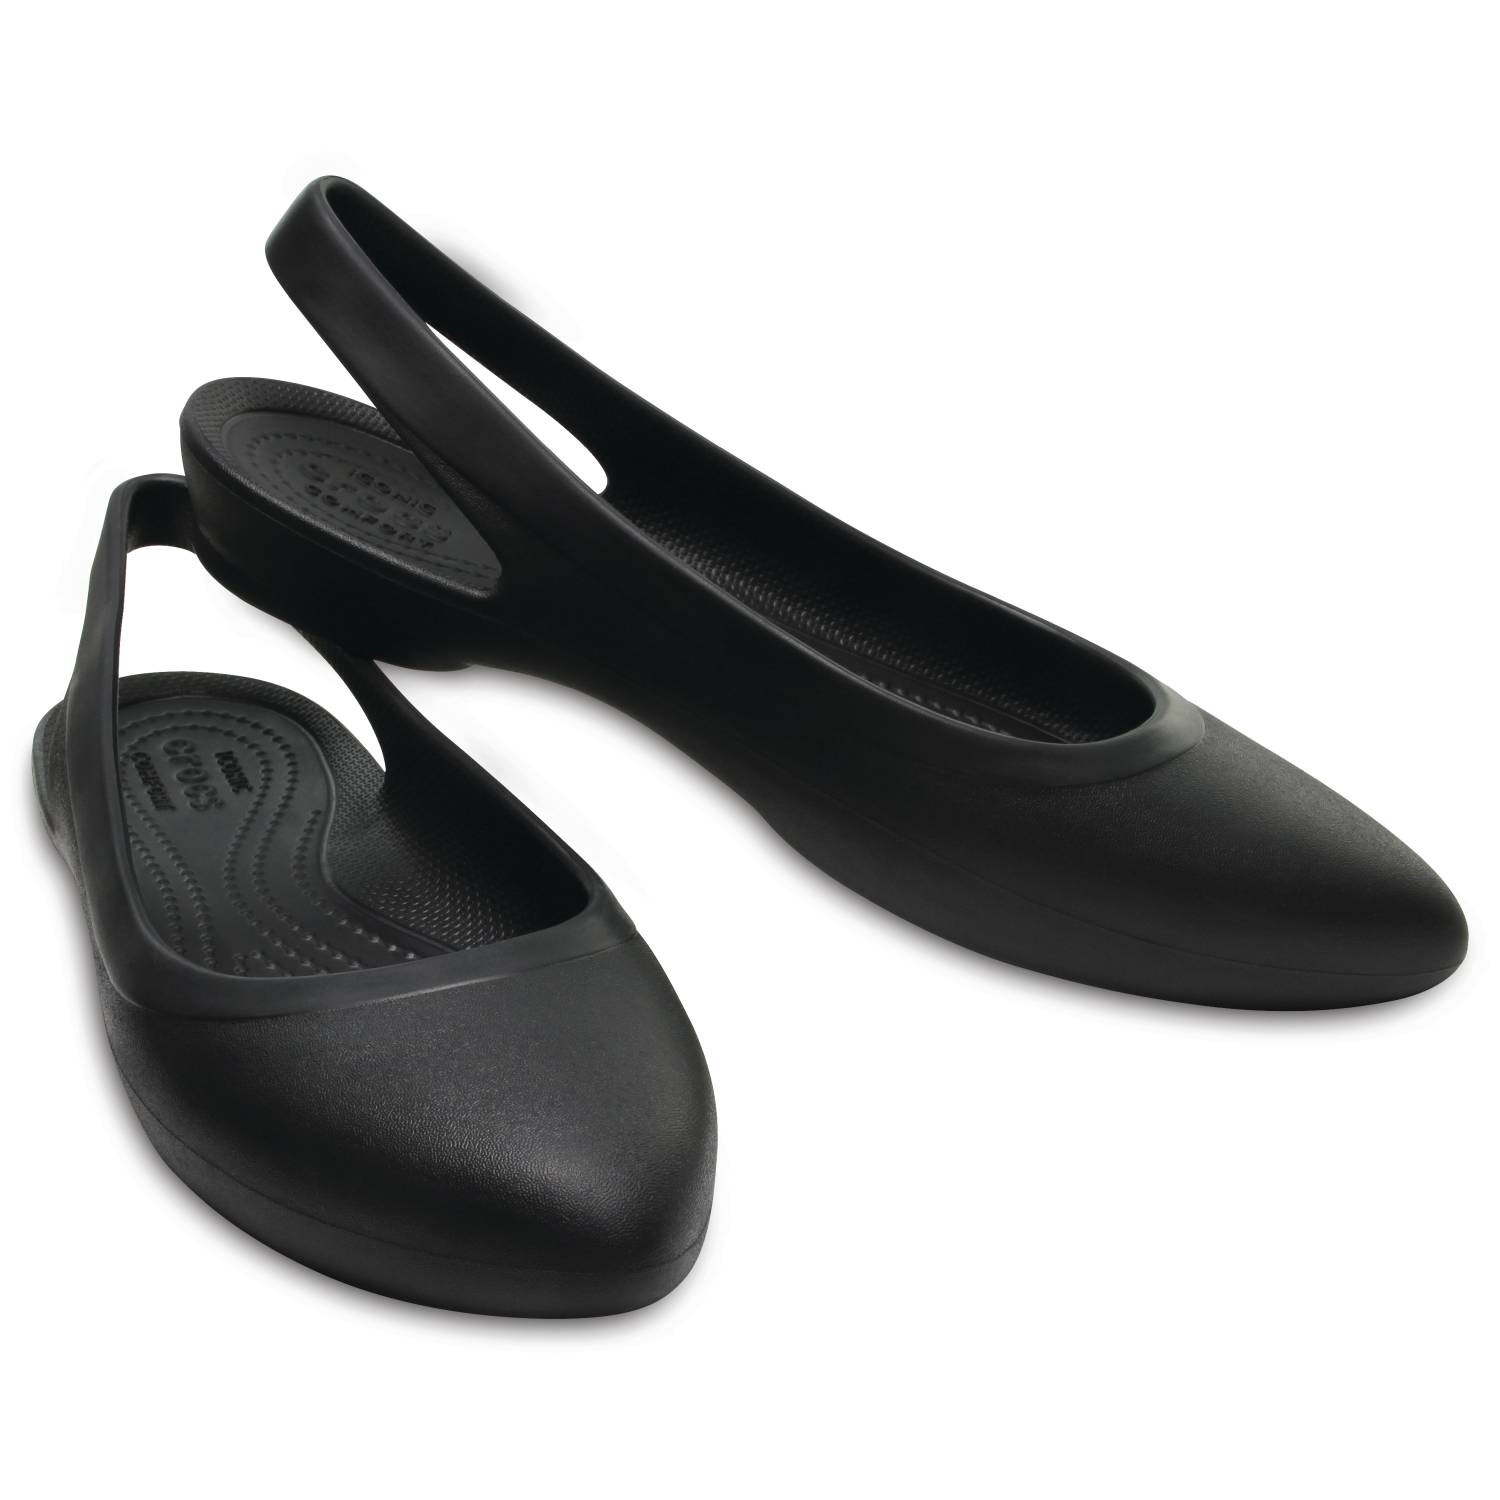 crocs slingback sandals